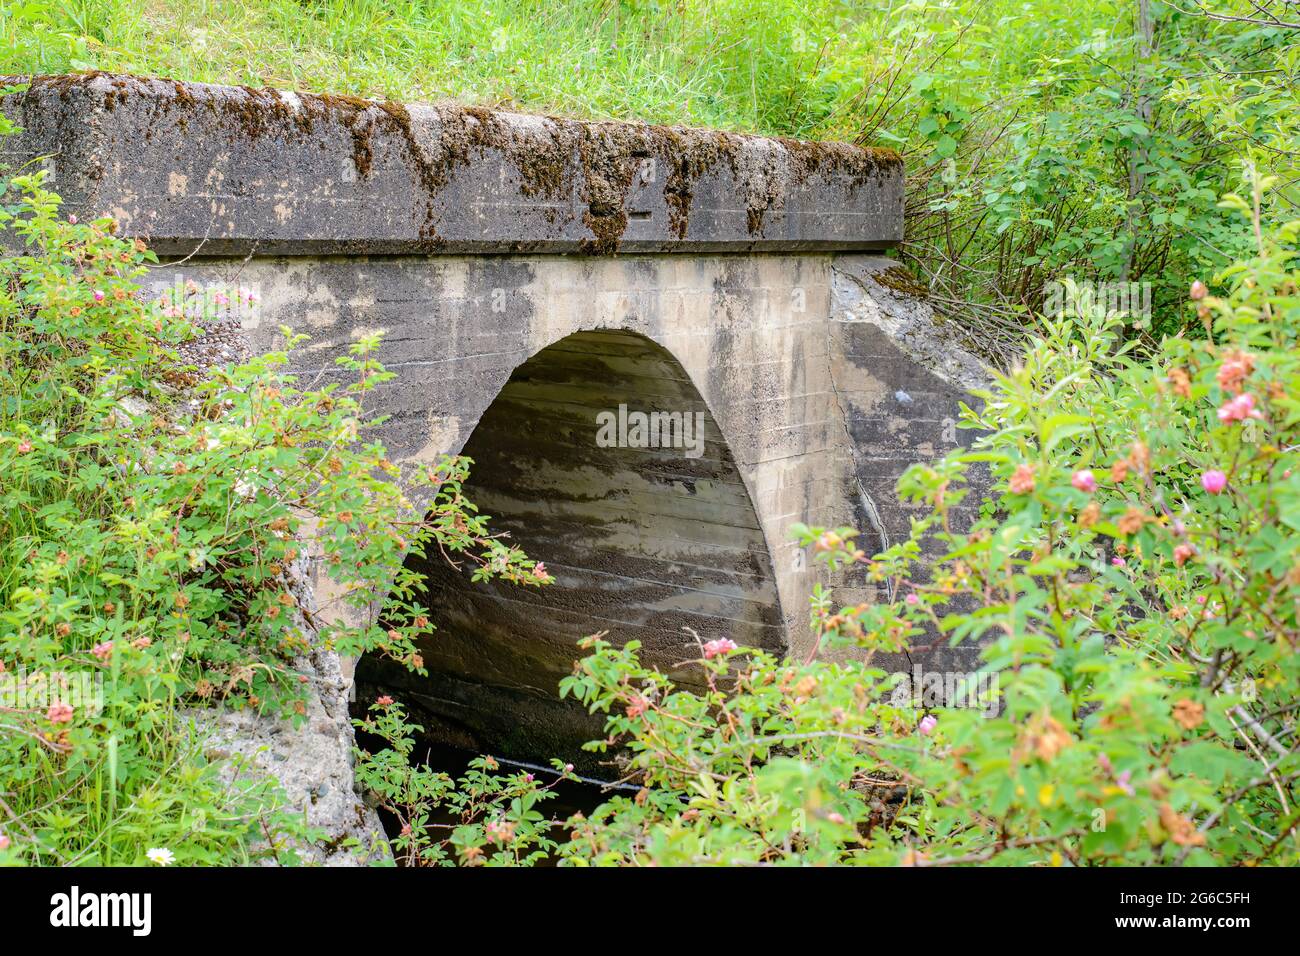 Un vieux pont ou aqueduc envahi par des buissons. Seule la partie supérieure est visible, reste cachée par la végétation. Banque D'Images